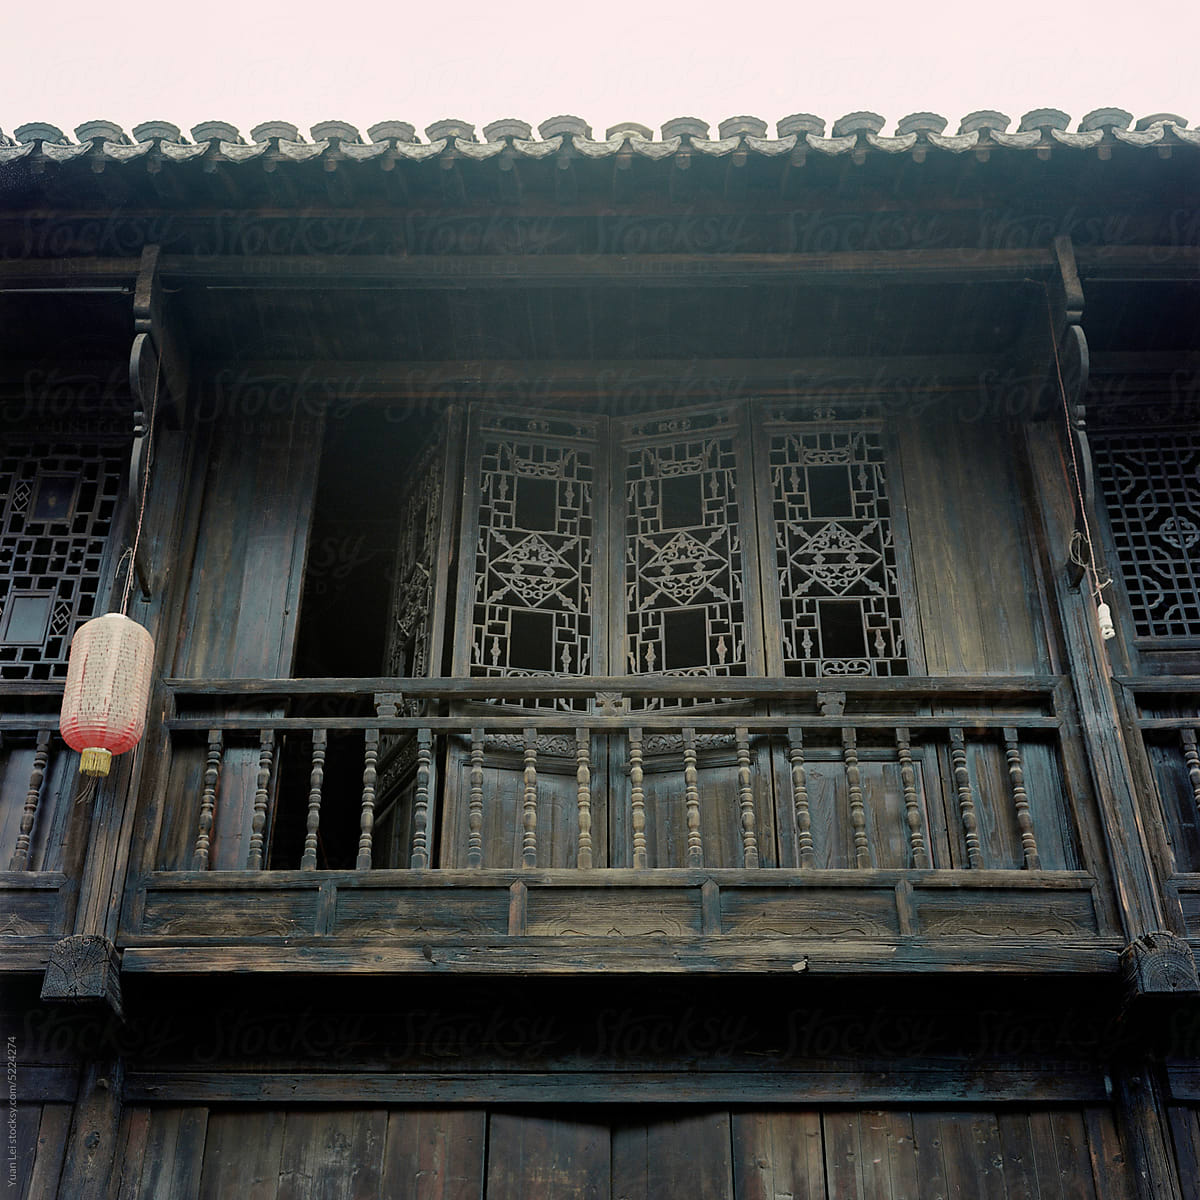 Screen doors on the second floor of ancient buildings